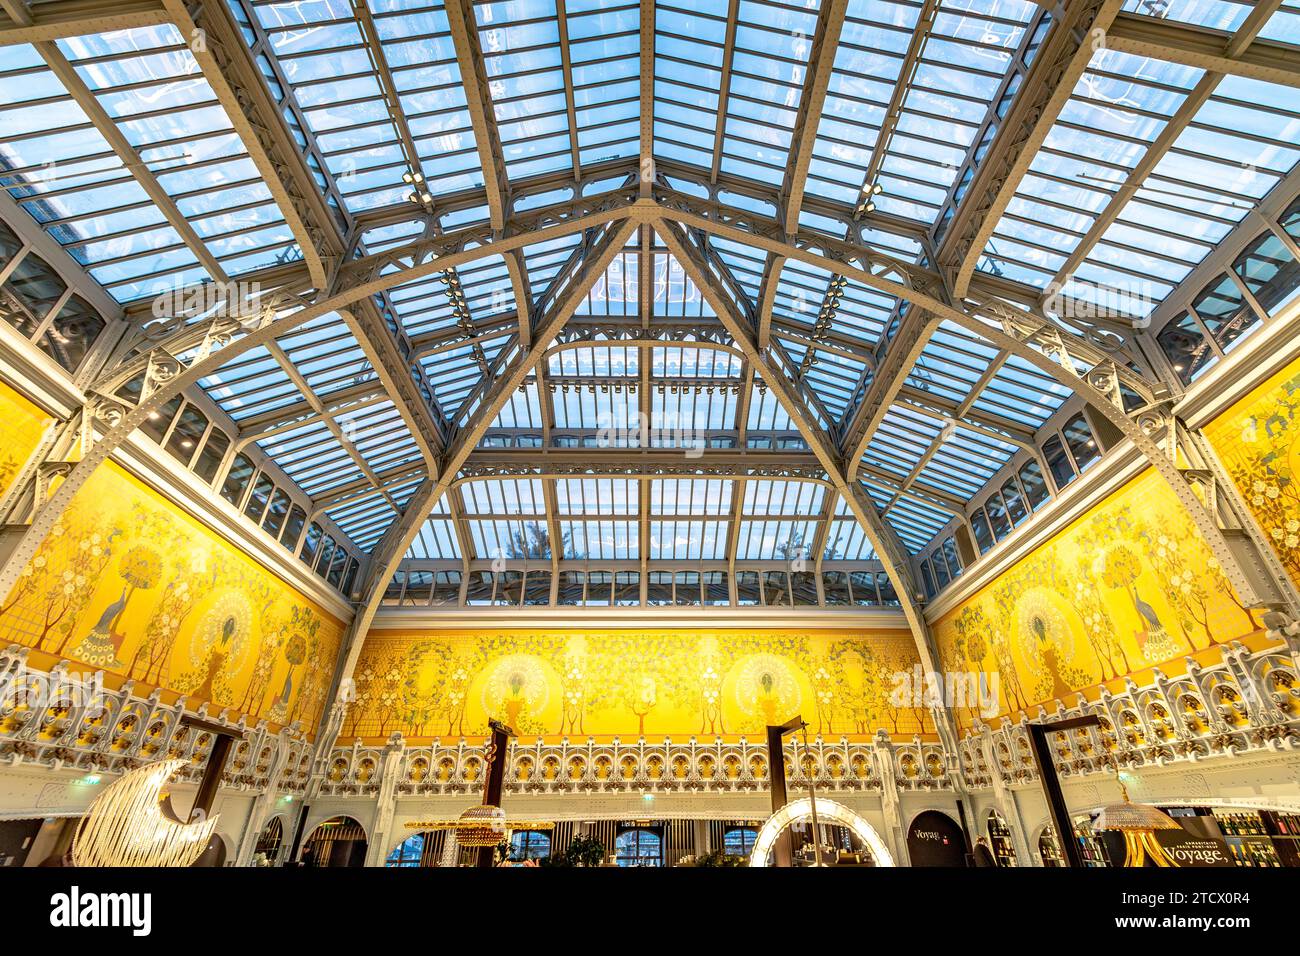 Le beau toit orné de la Samaritaine est un grand magasin à Parisin dans le 1e arrondissement de Paris, France Banque D'Images